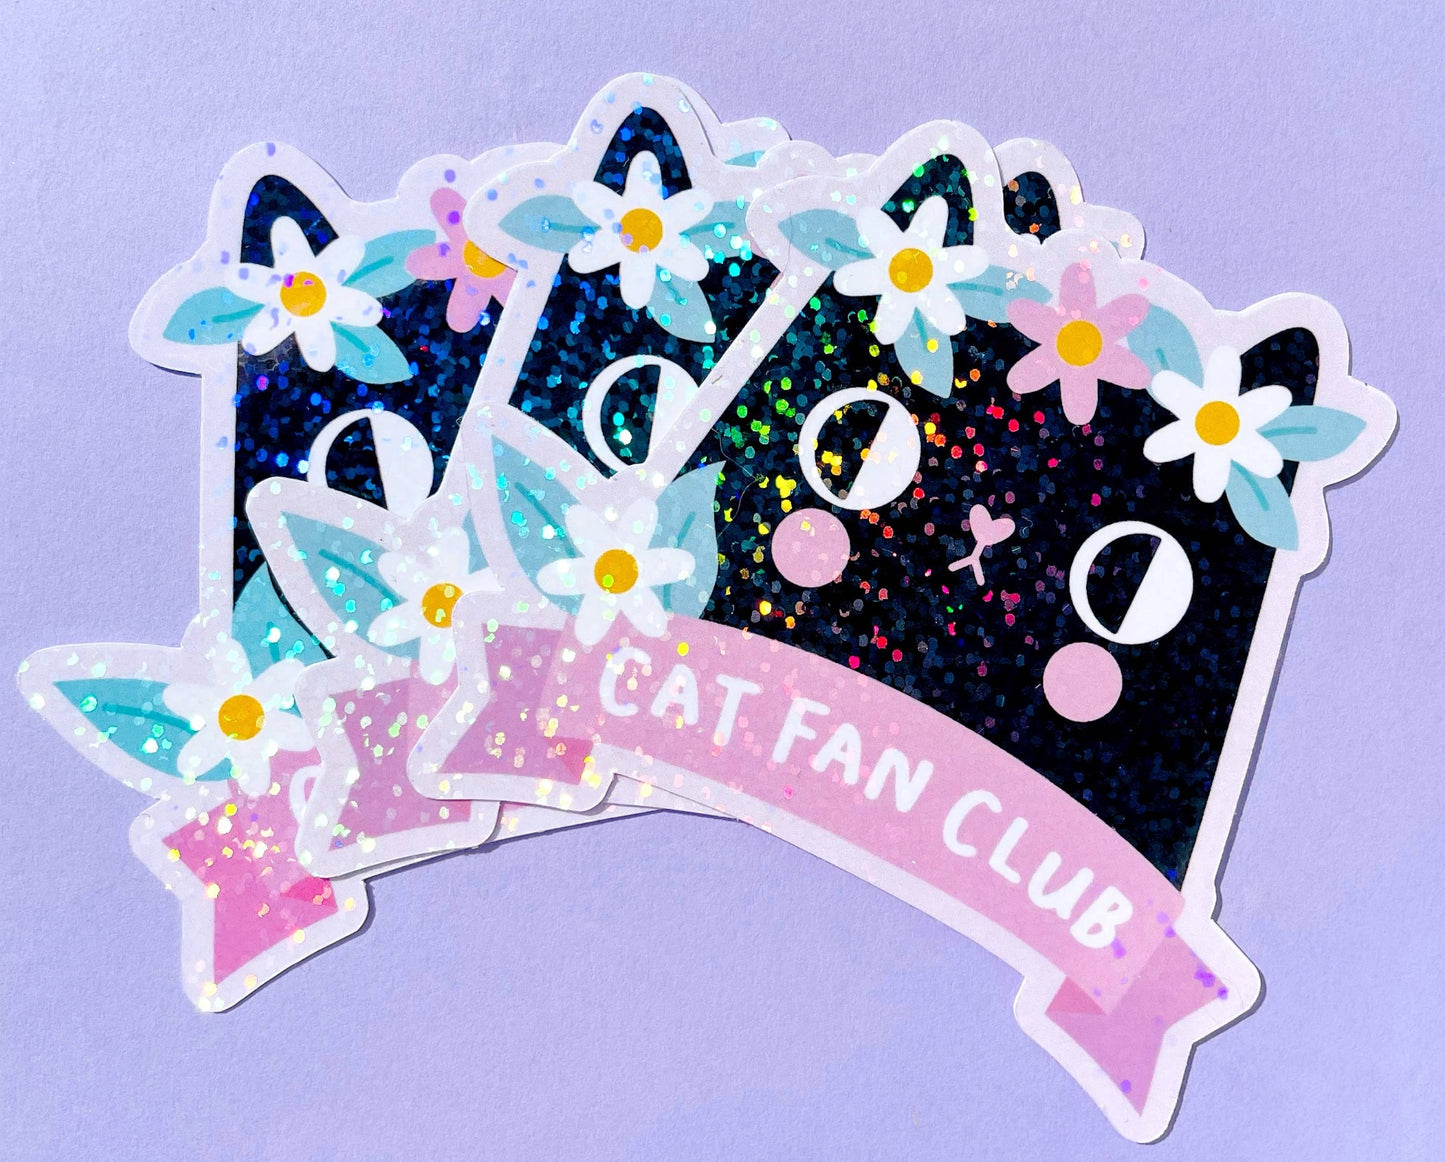 Cat Fan Club Glitter Klistremerke